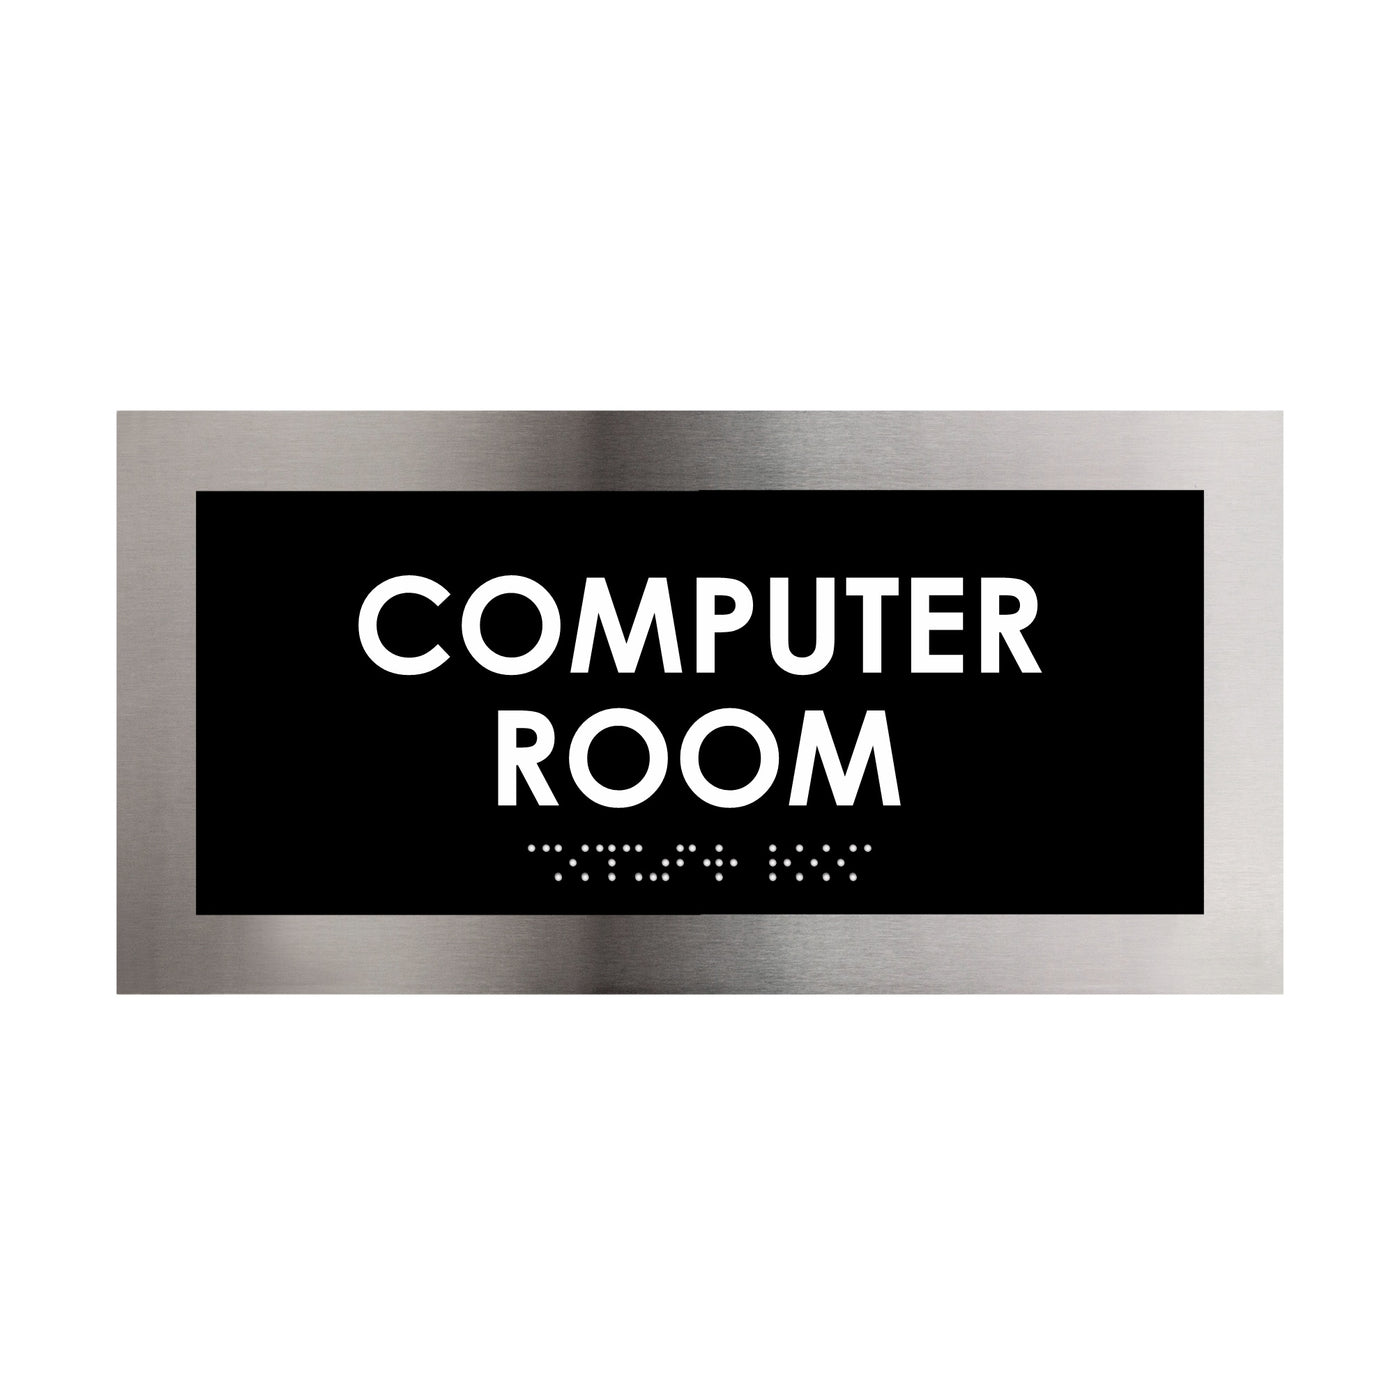 Computer Room Door Plate - Stainless Steel Sign - "Modern" Design